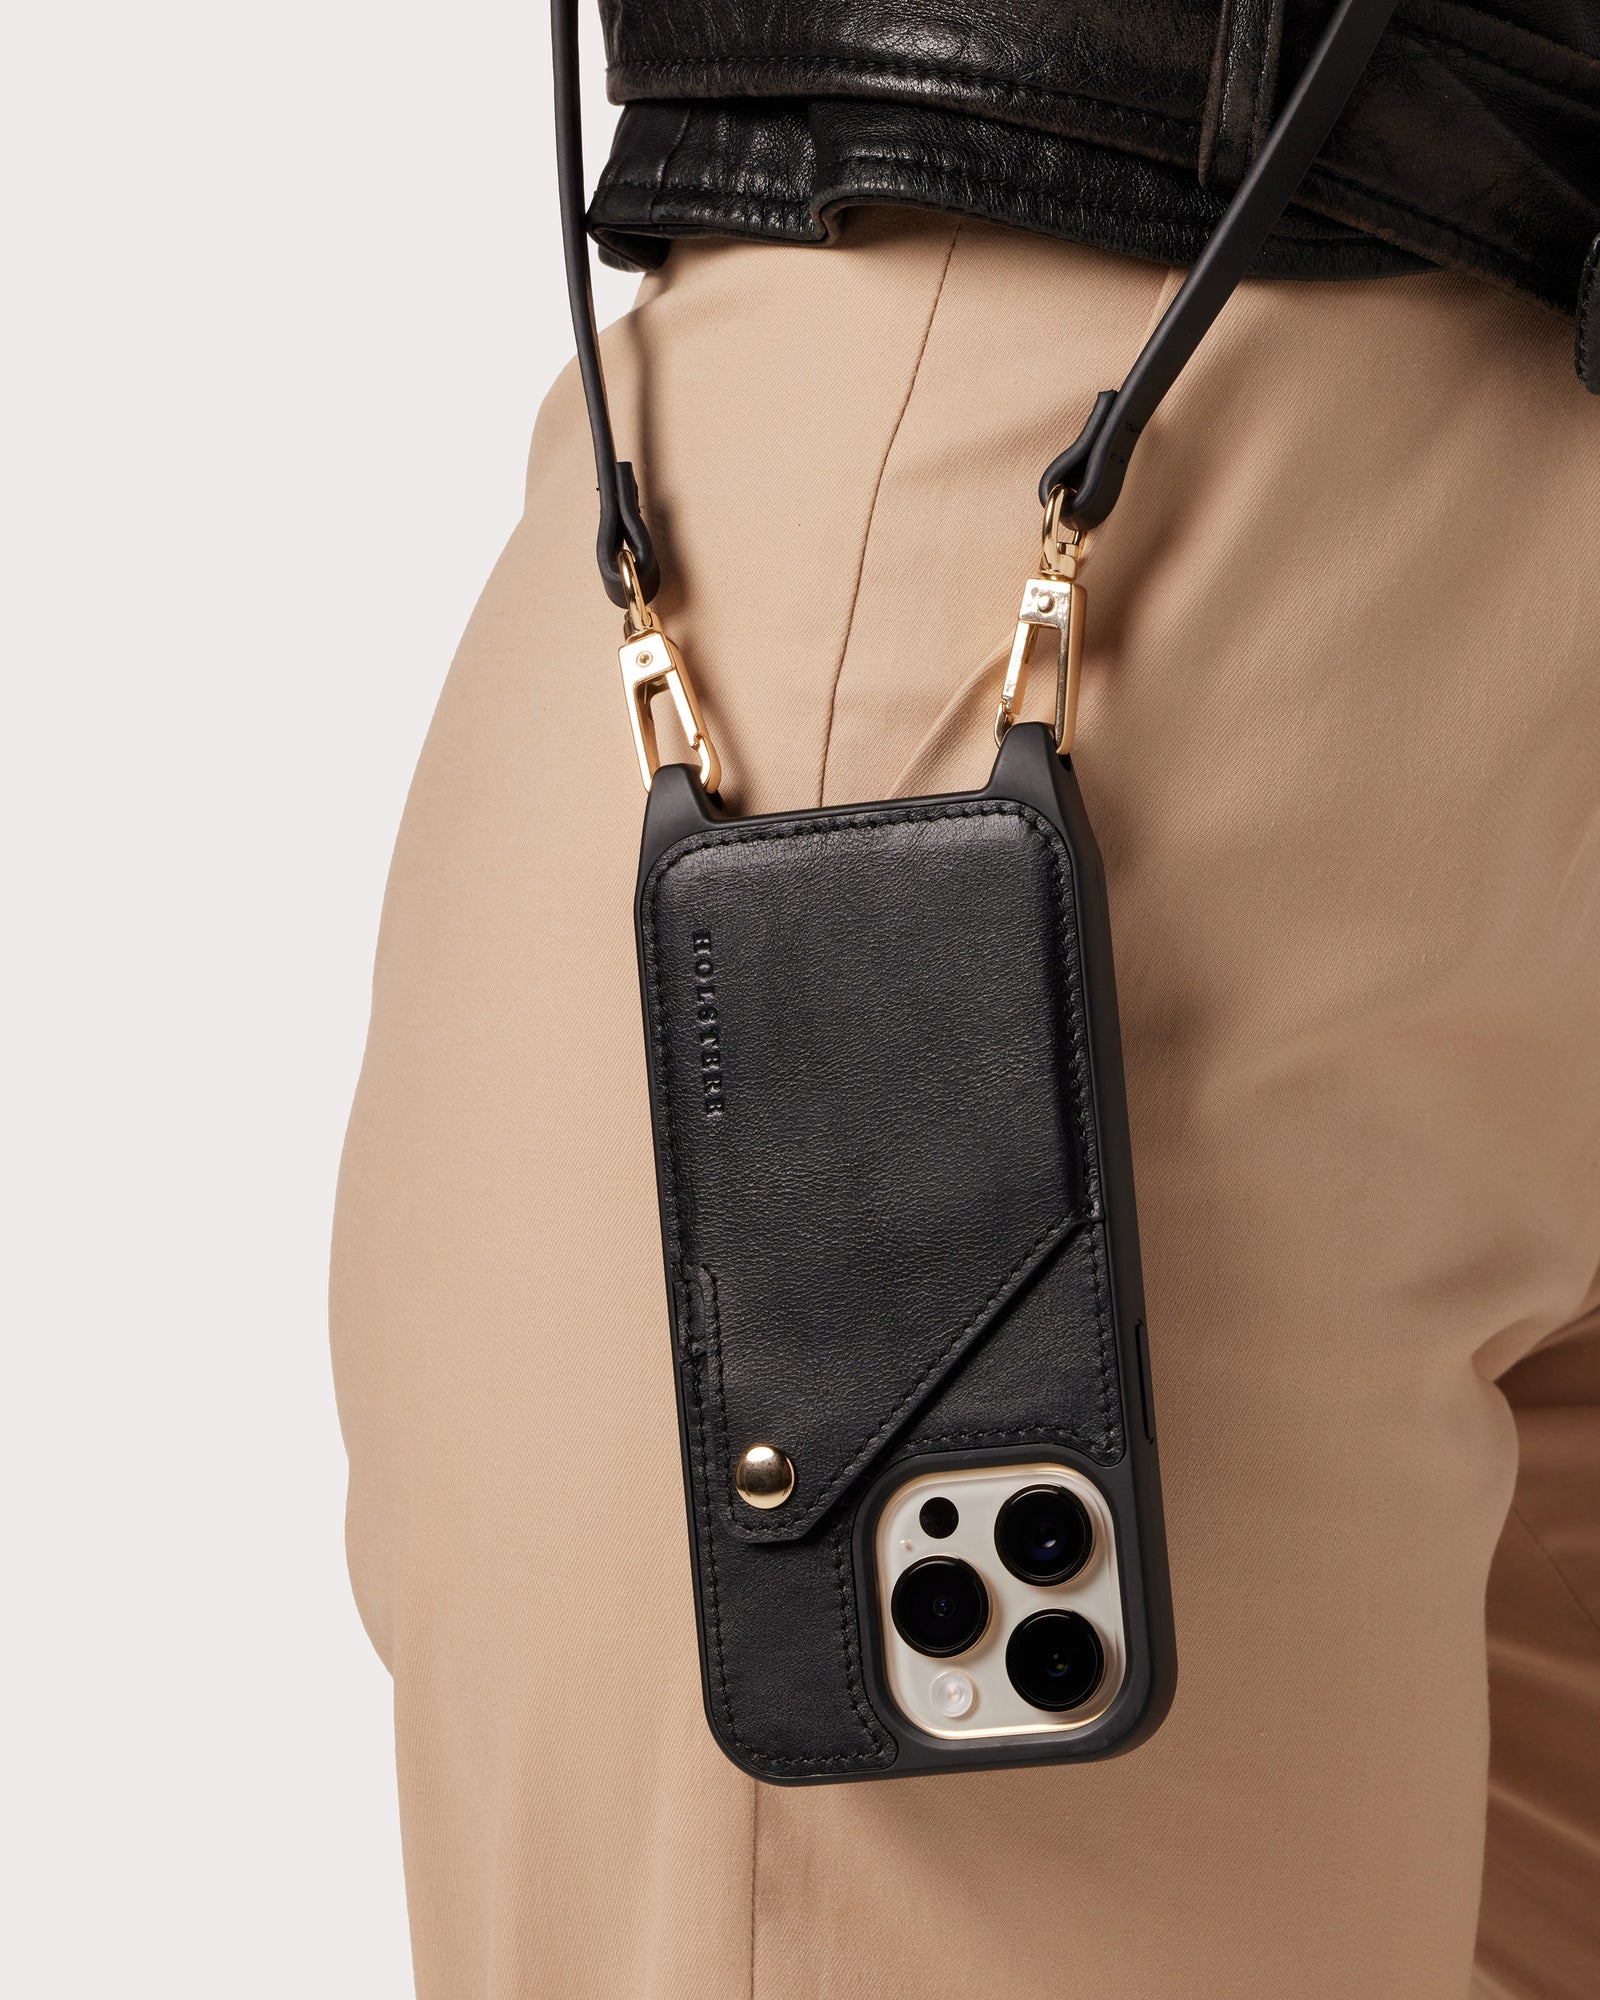 Genuine Leather Bag Strap Brand Luxury Adjustable Shoulder